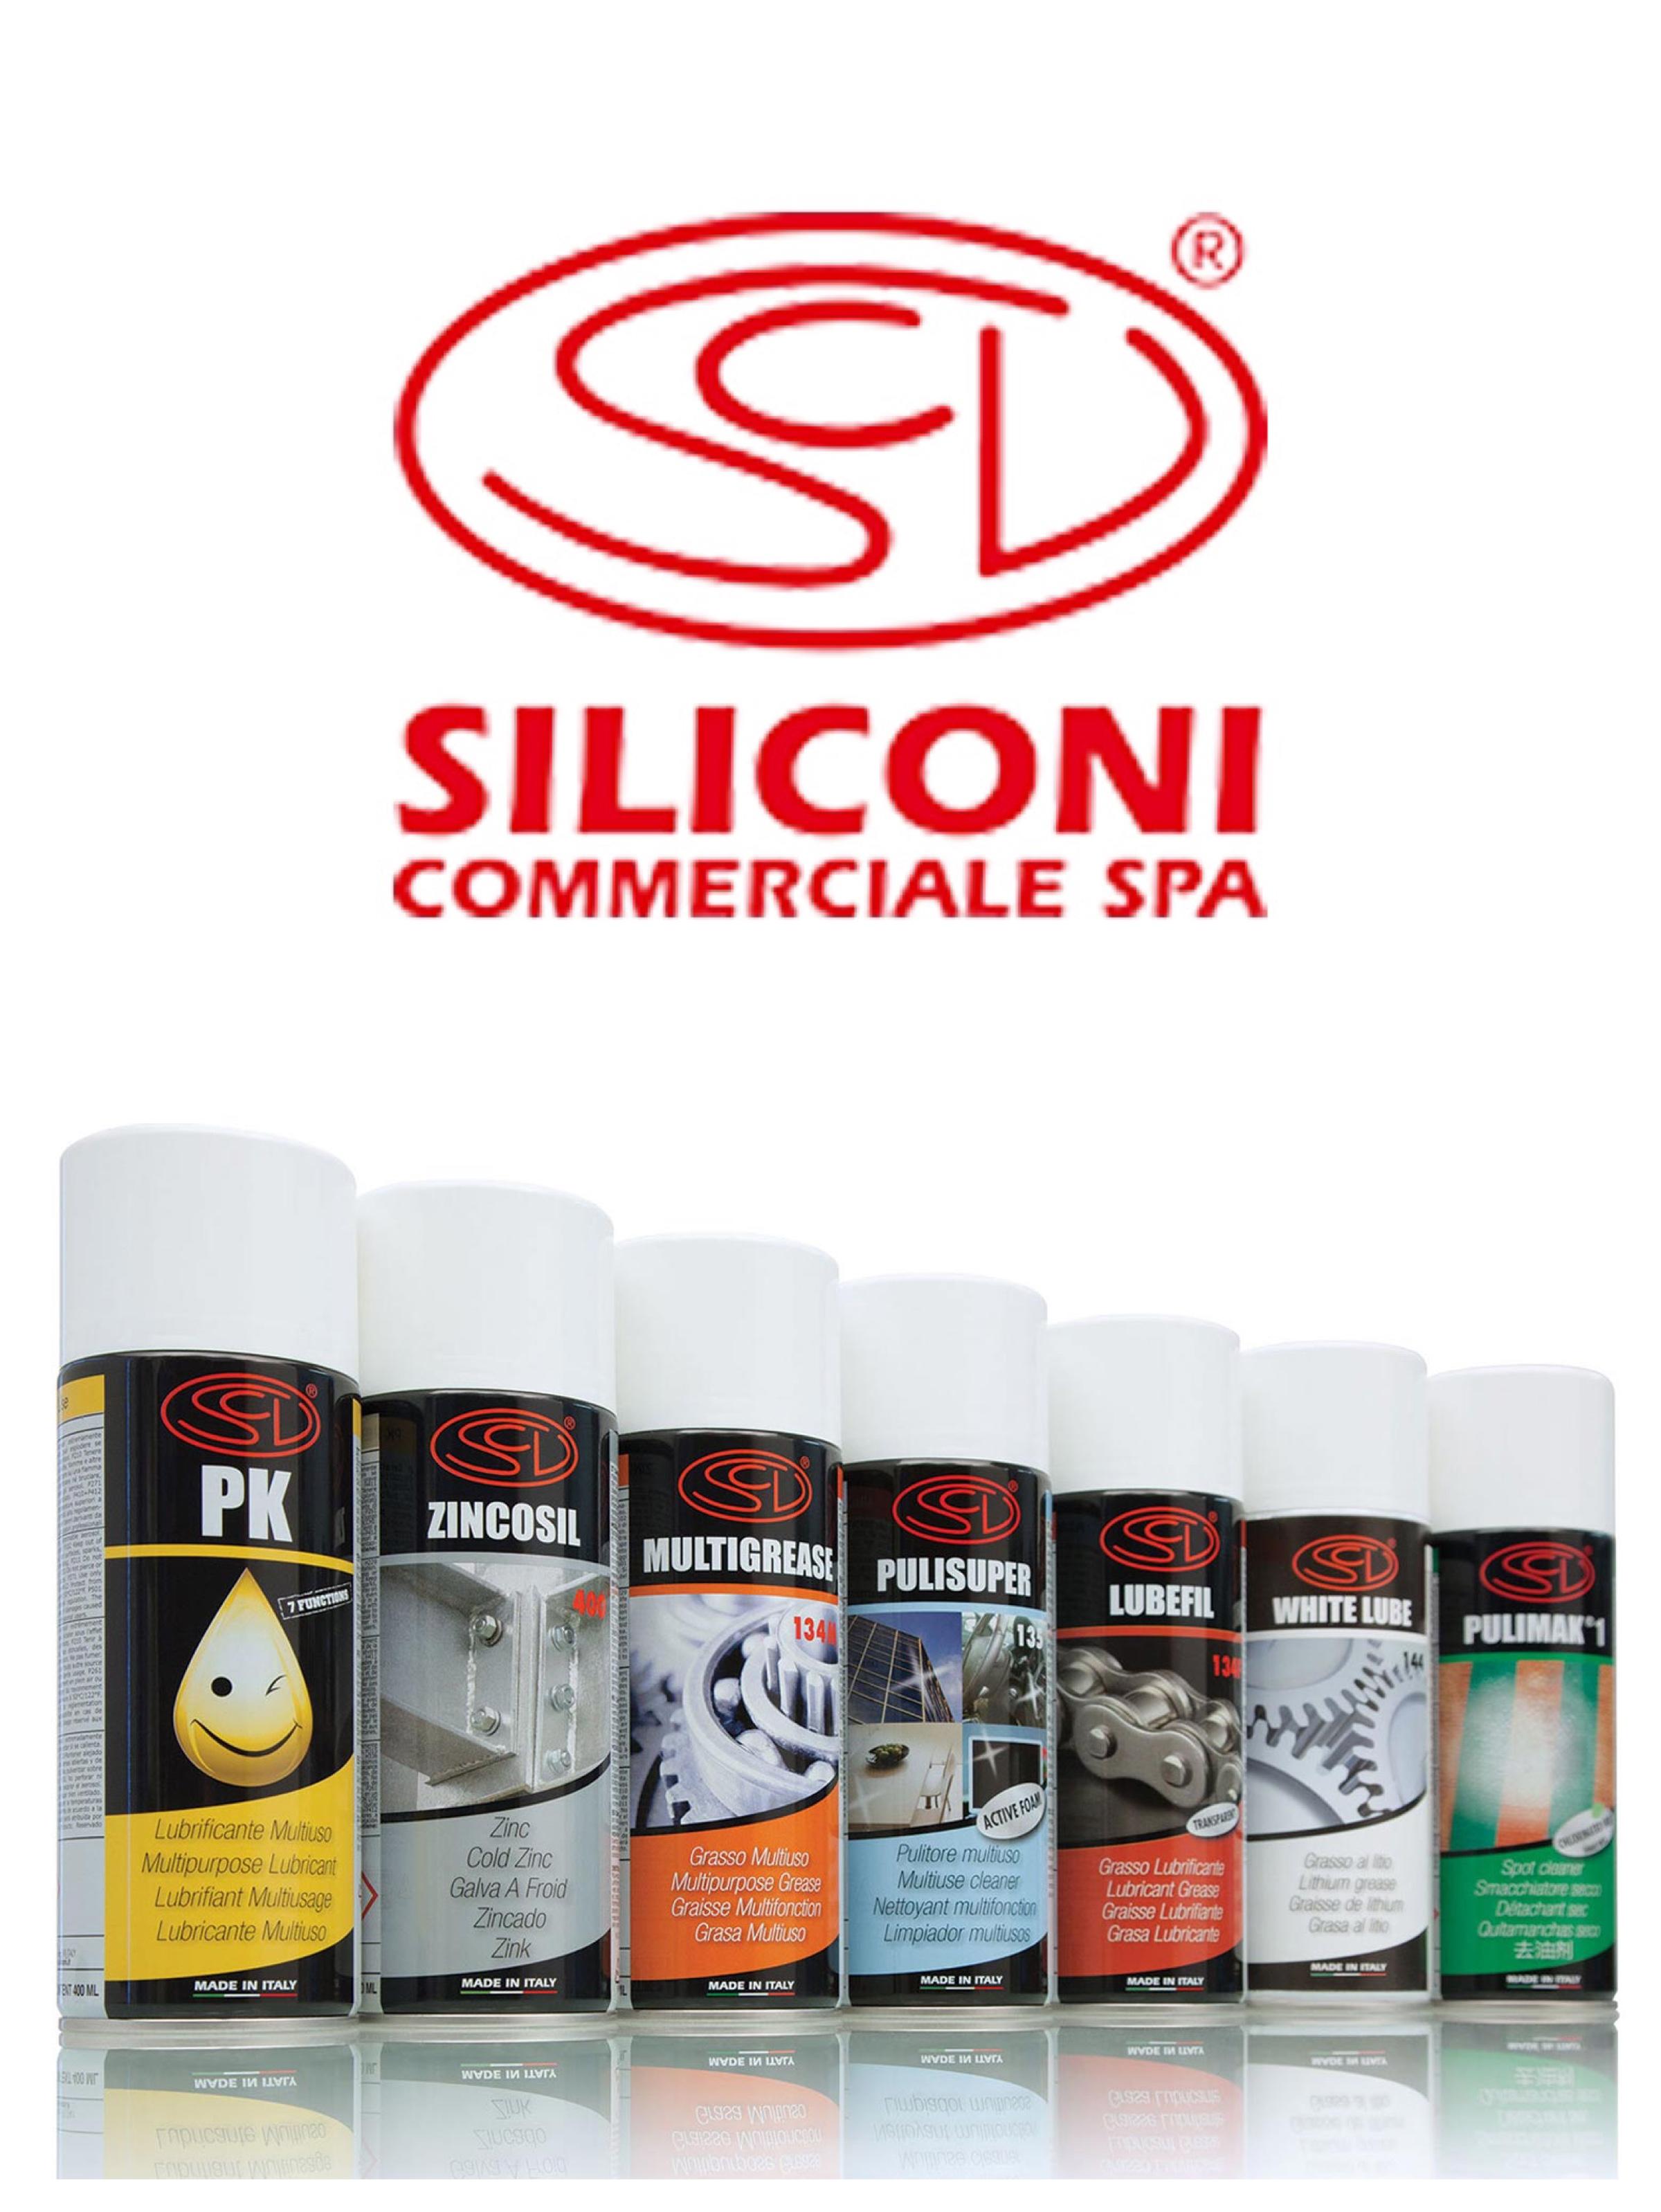 Distributore ufficiale Siliconi Commerciale SPA